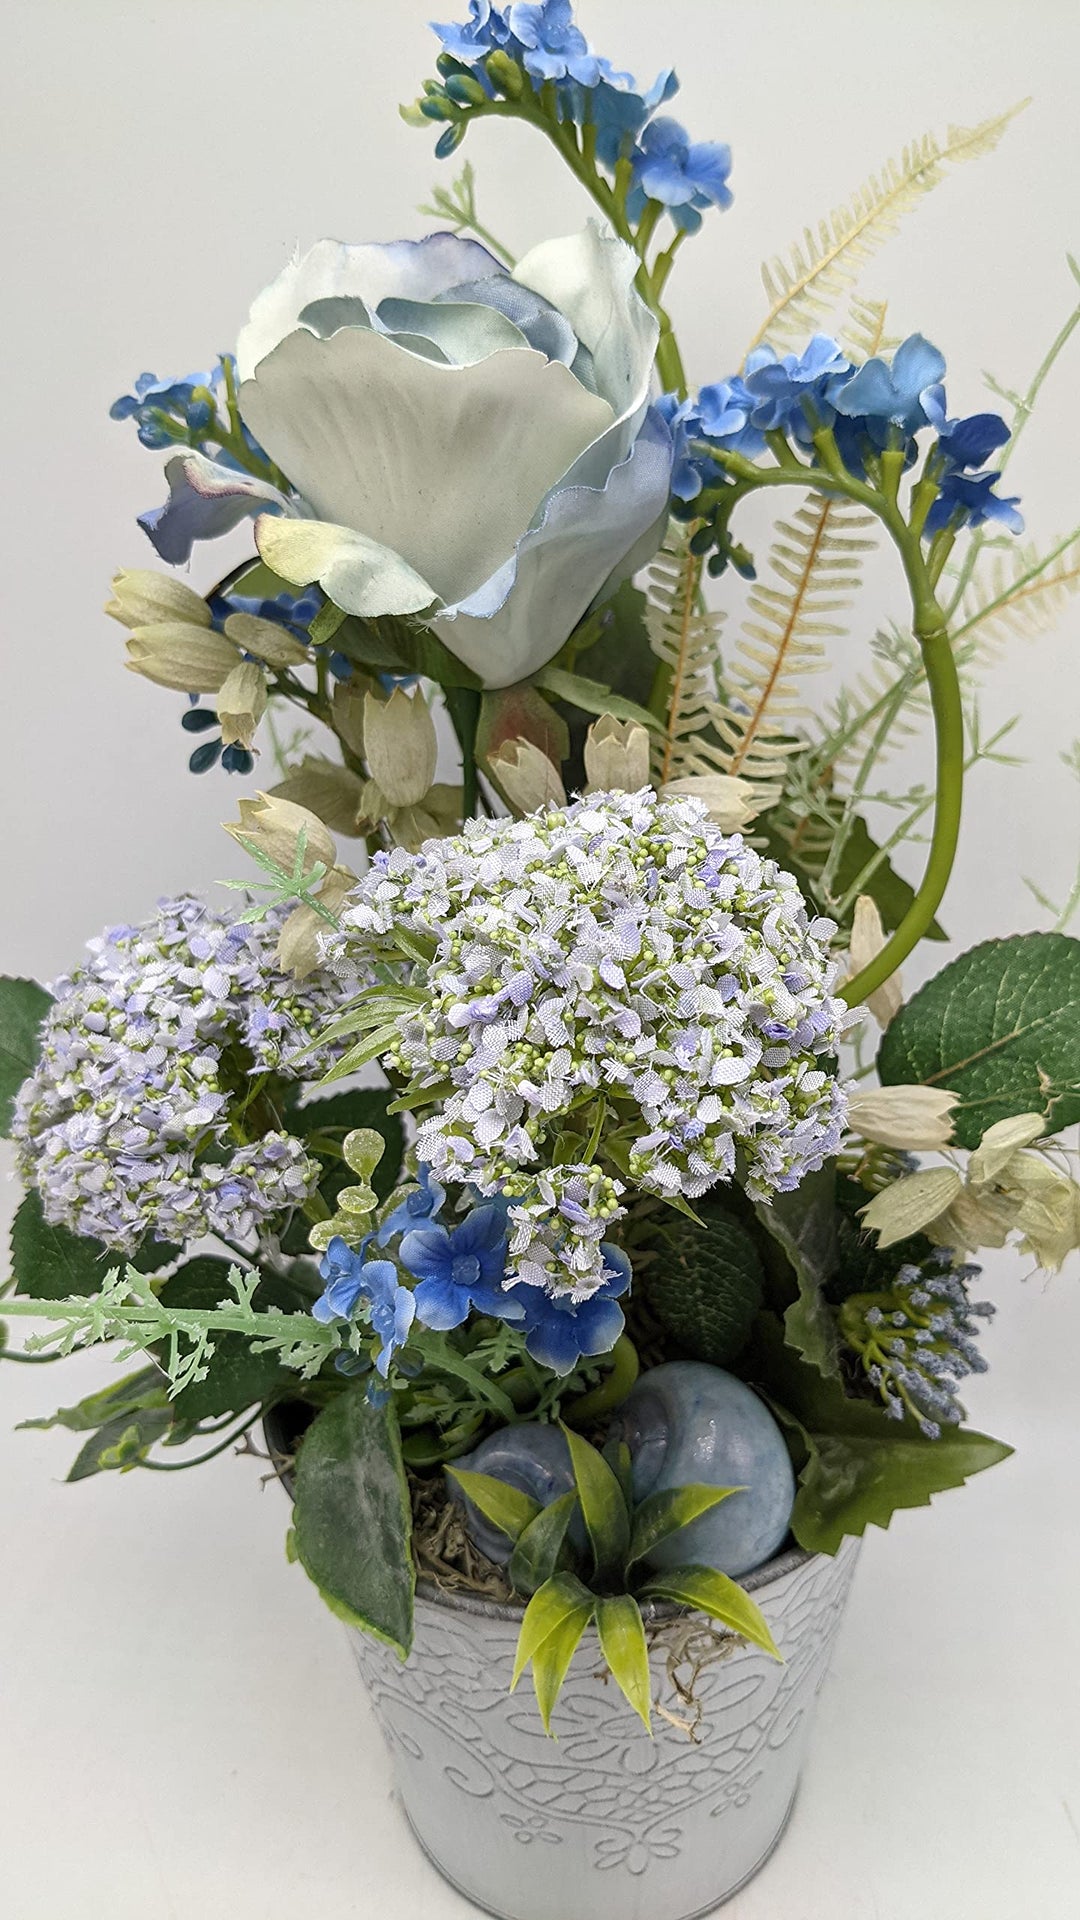 Sommergesteck Tischgesteck Sommerdekoration Seidenblumen Rose Hortensie Schnecken blau